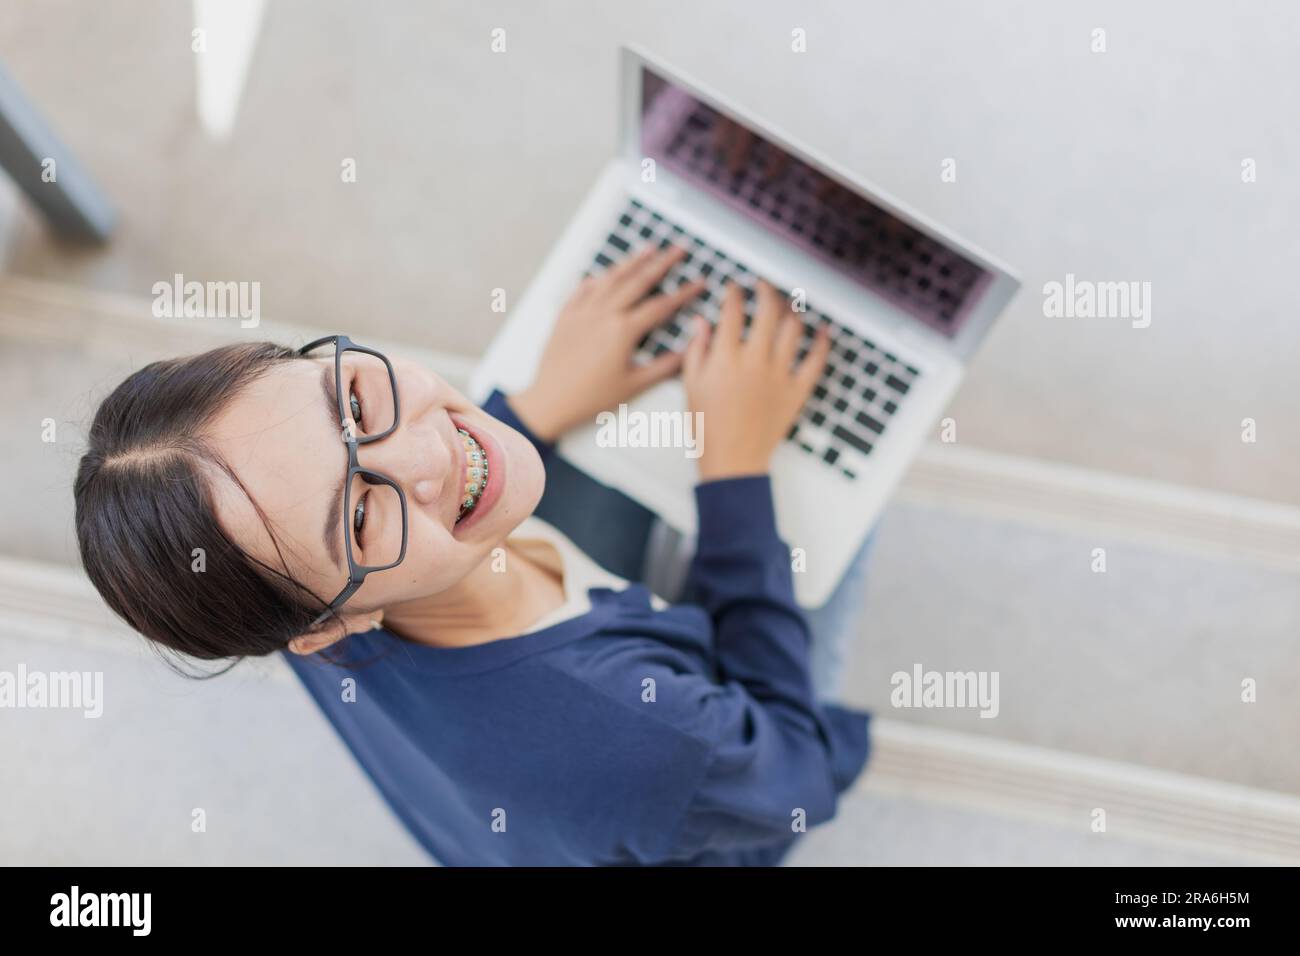 Adolescente universitaria felice sorridente ama usare il notebook per imparare l'istruzione nel campus scolastico. Foto Stock